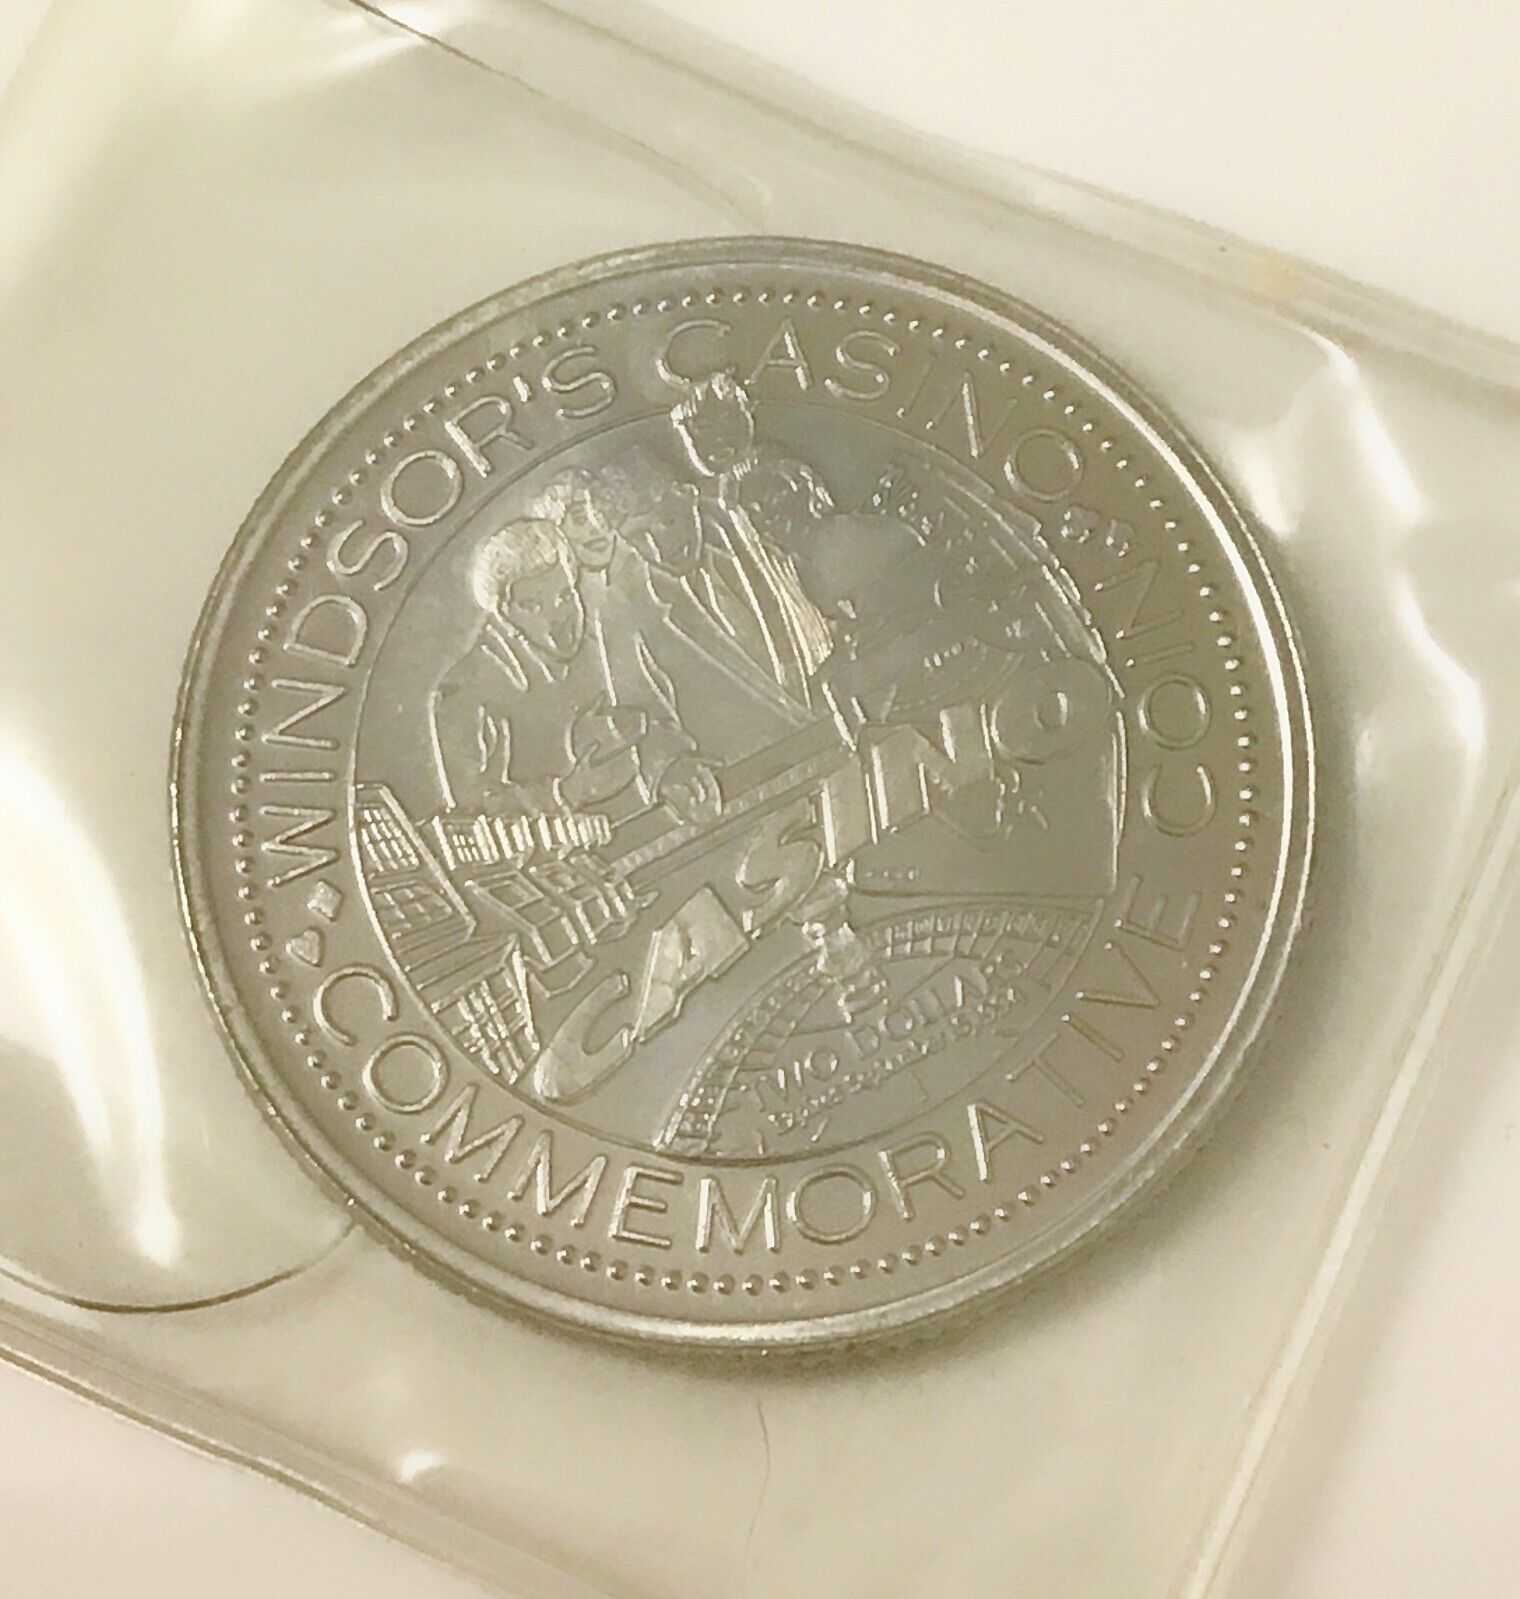 VTG 1994 Windsor Casino $2.00 Commemorative Coin ~ Mint Condition unc.